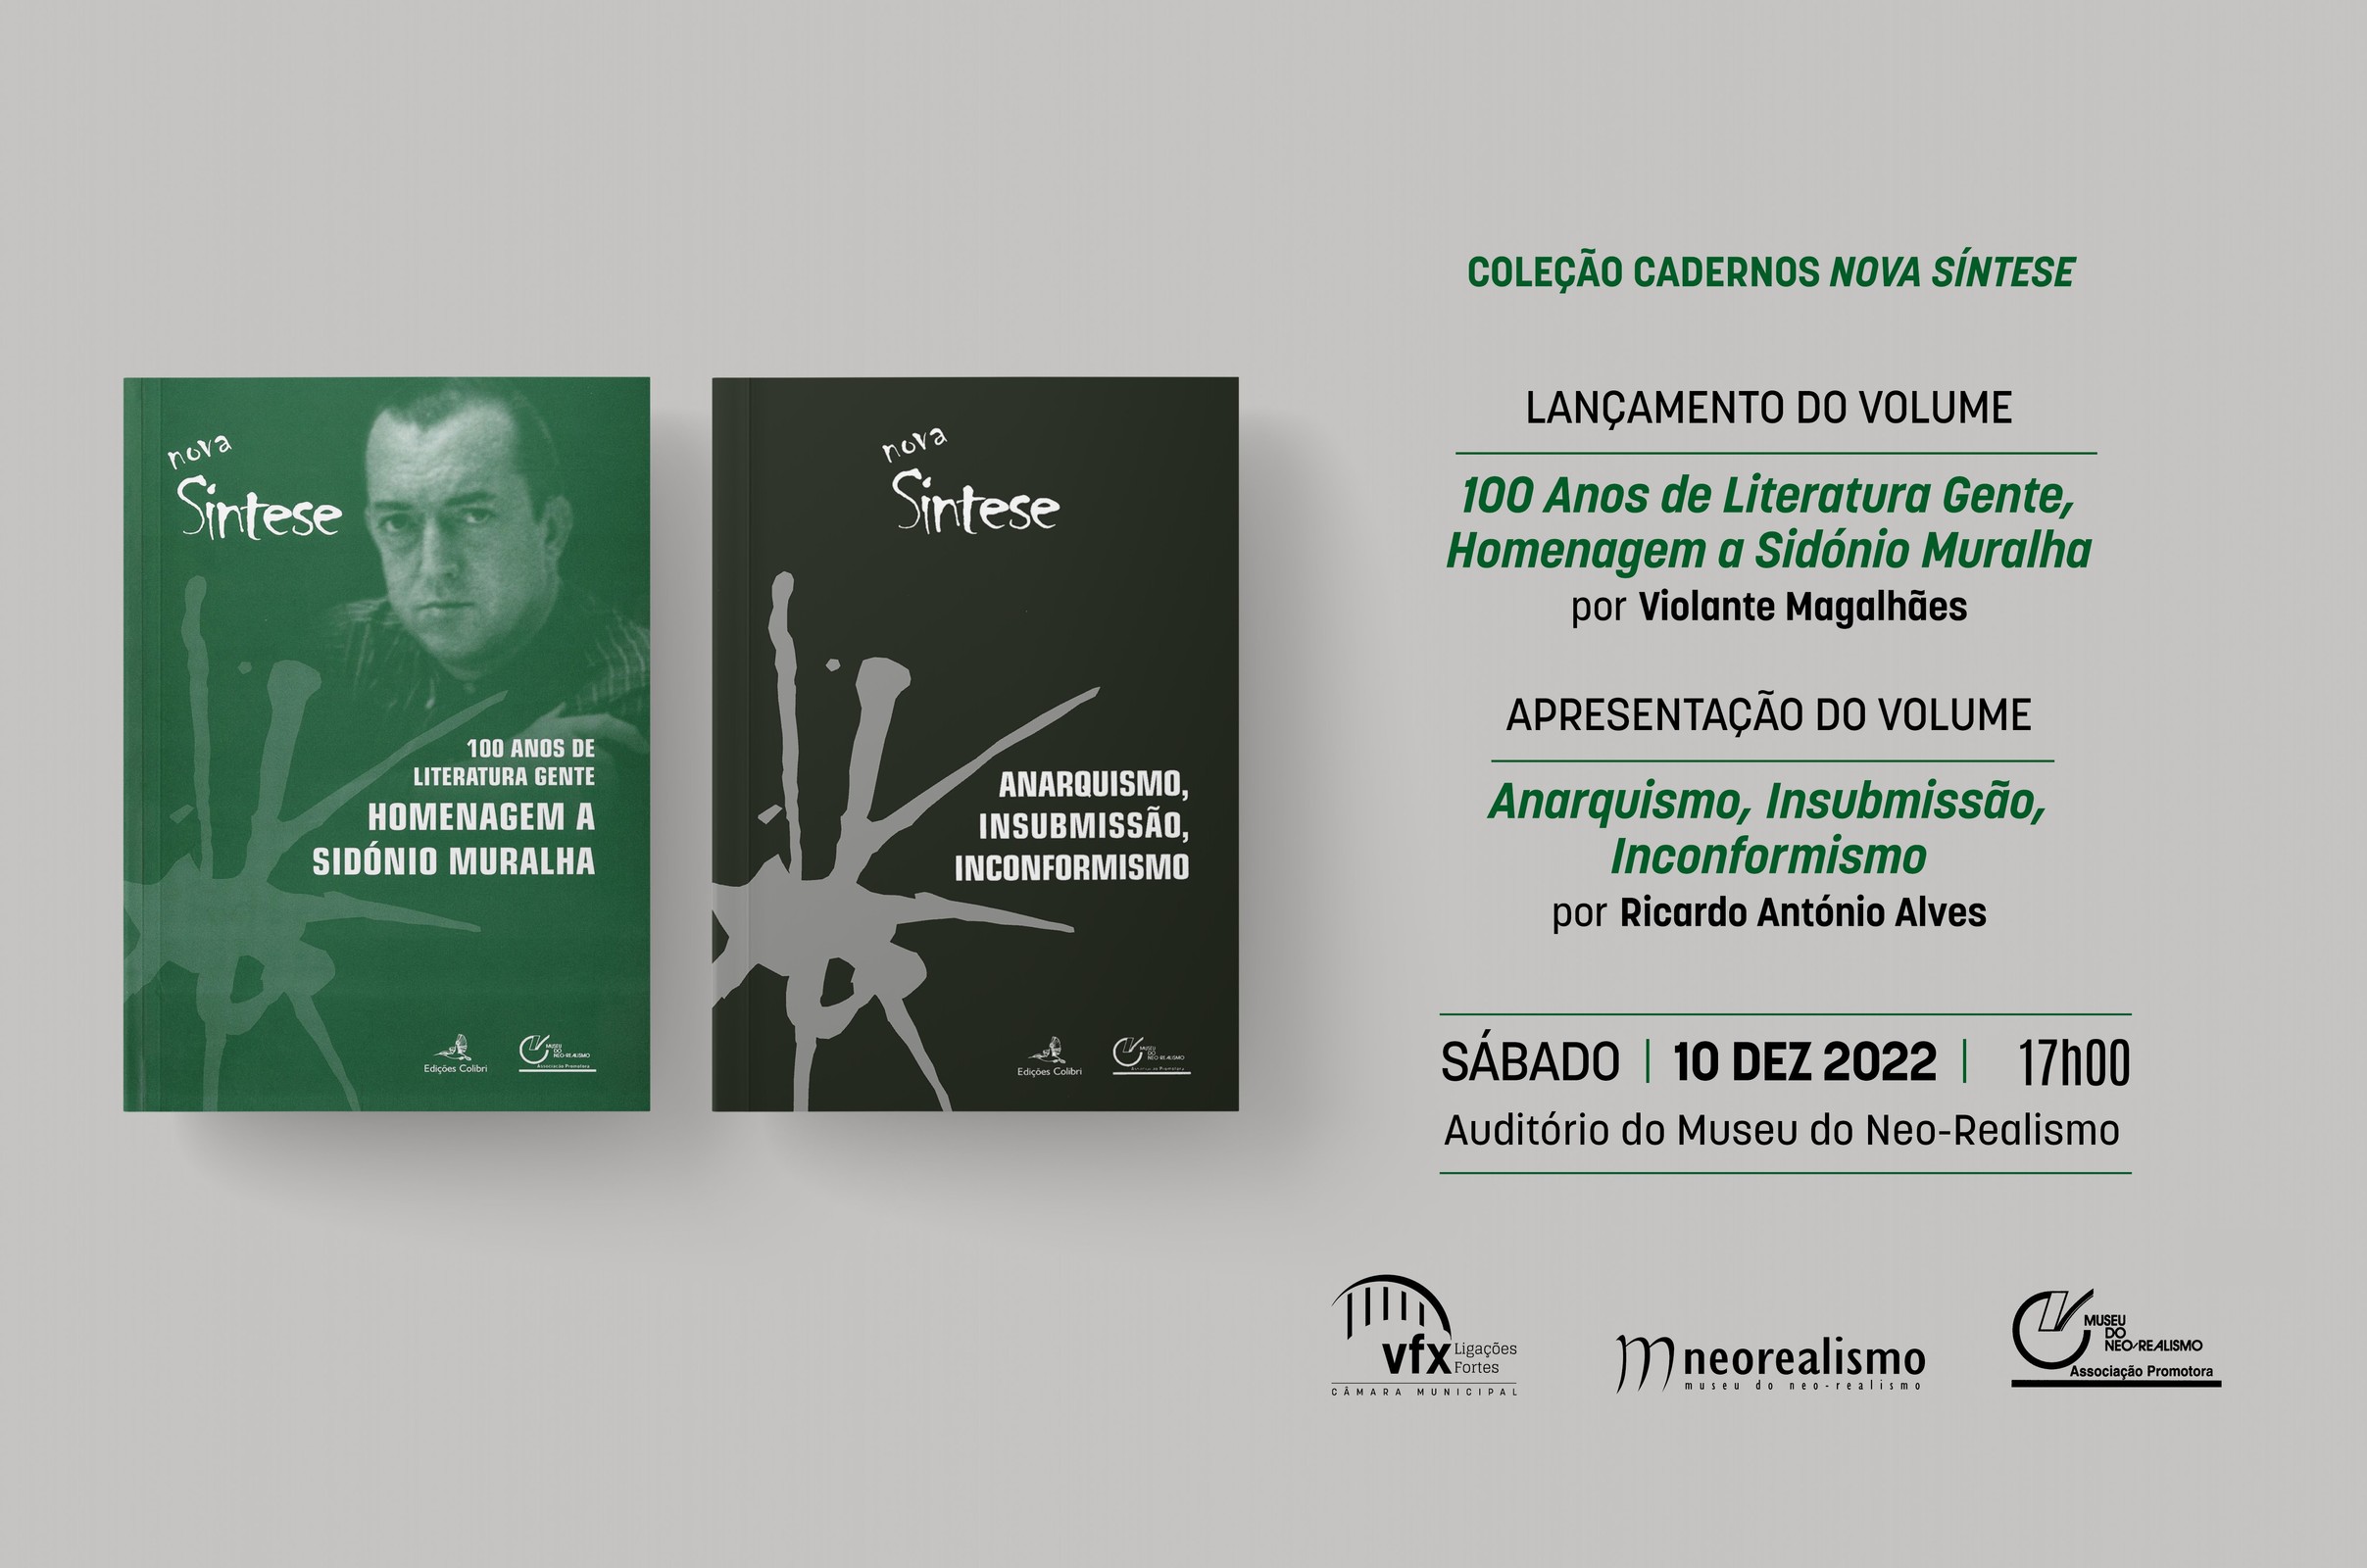 Coleção Cadernos Nova Síntese, lançamento do volume '100 Anos de Literatura Gente, Homenagem a Si...